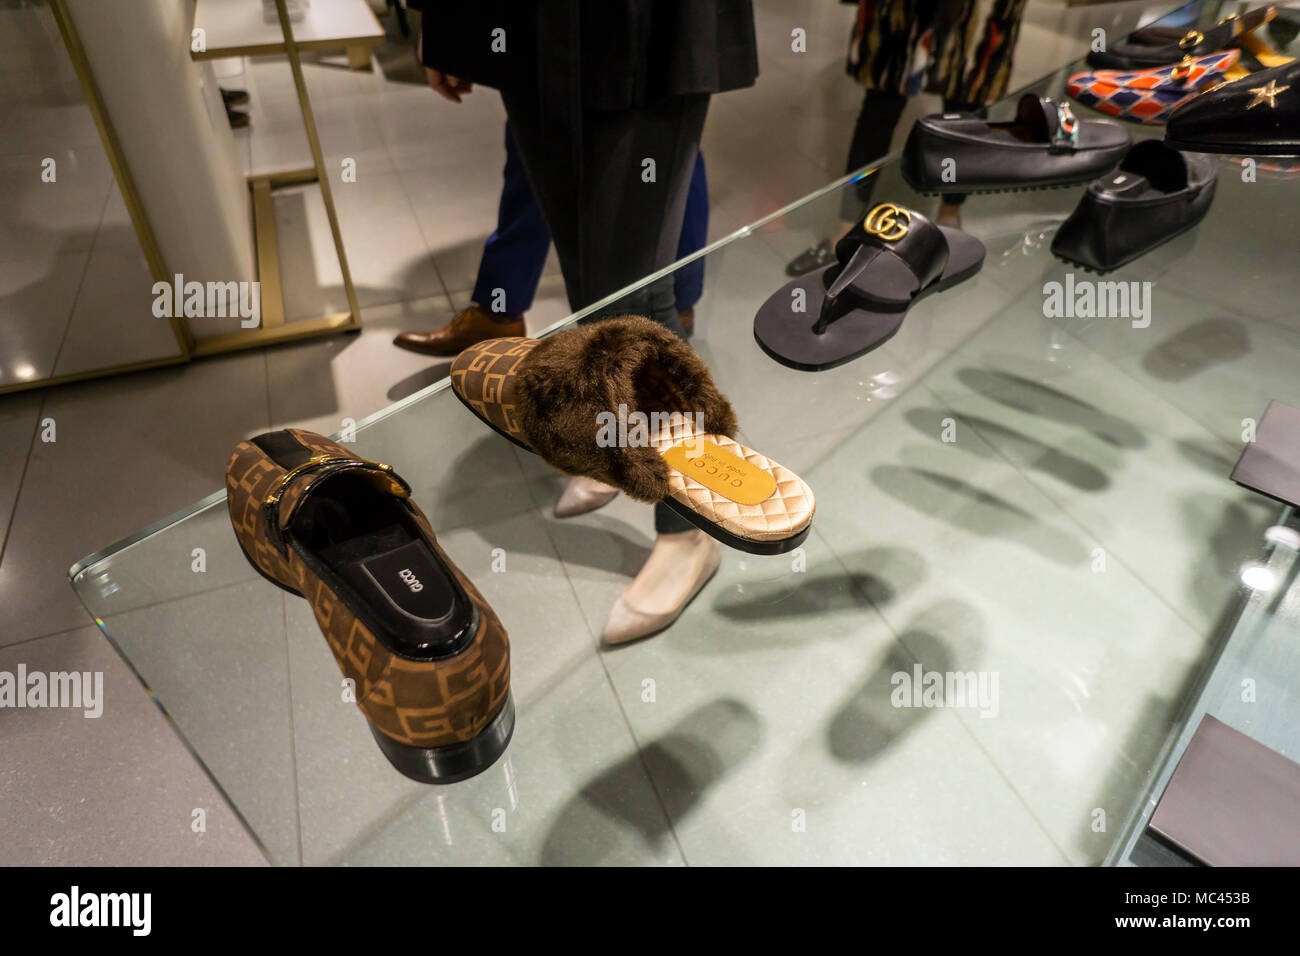 New York, USA. Apr 12, 2018. Chaussures Gucci à l'intérieur de la chaussure  dans le nouveau ministère Nordstrom Men's Store dans le centre de Manhattan  à New York le jour de son